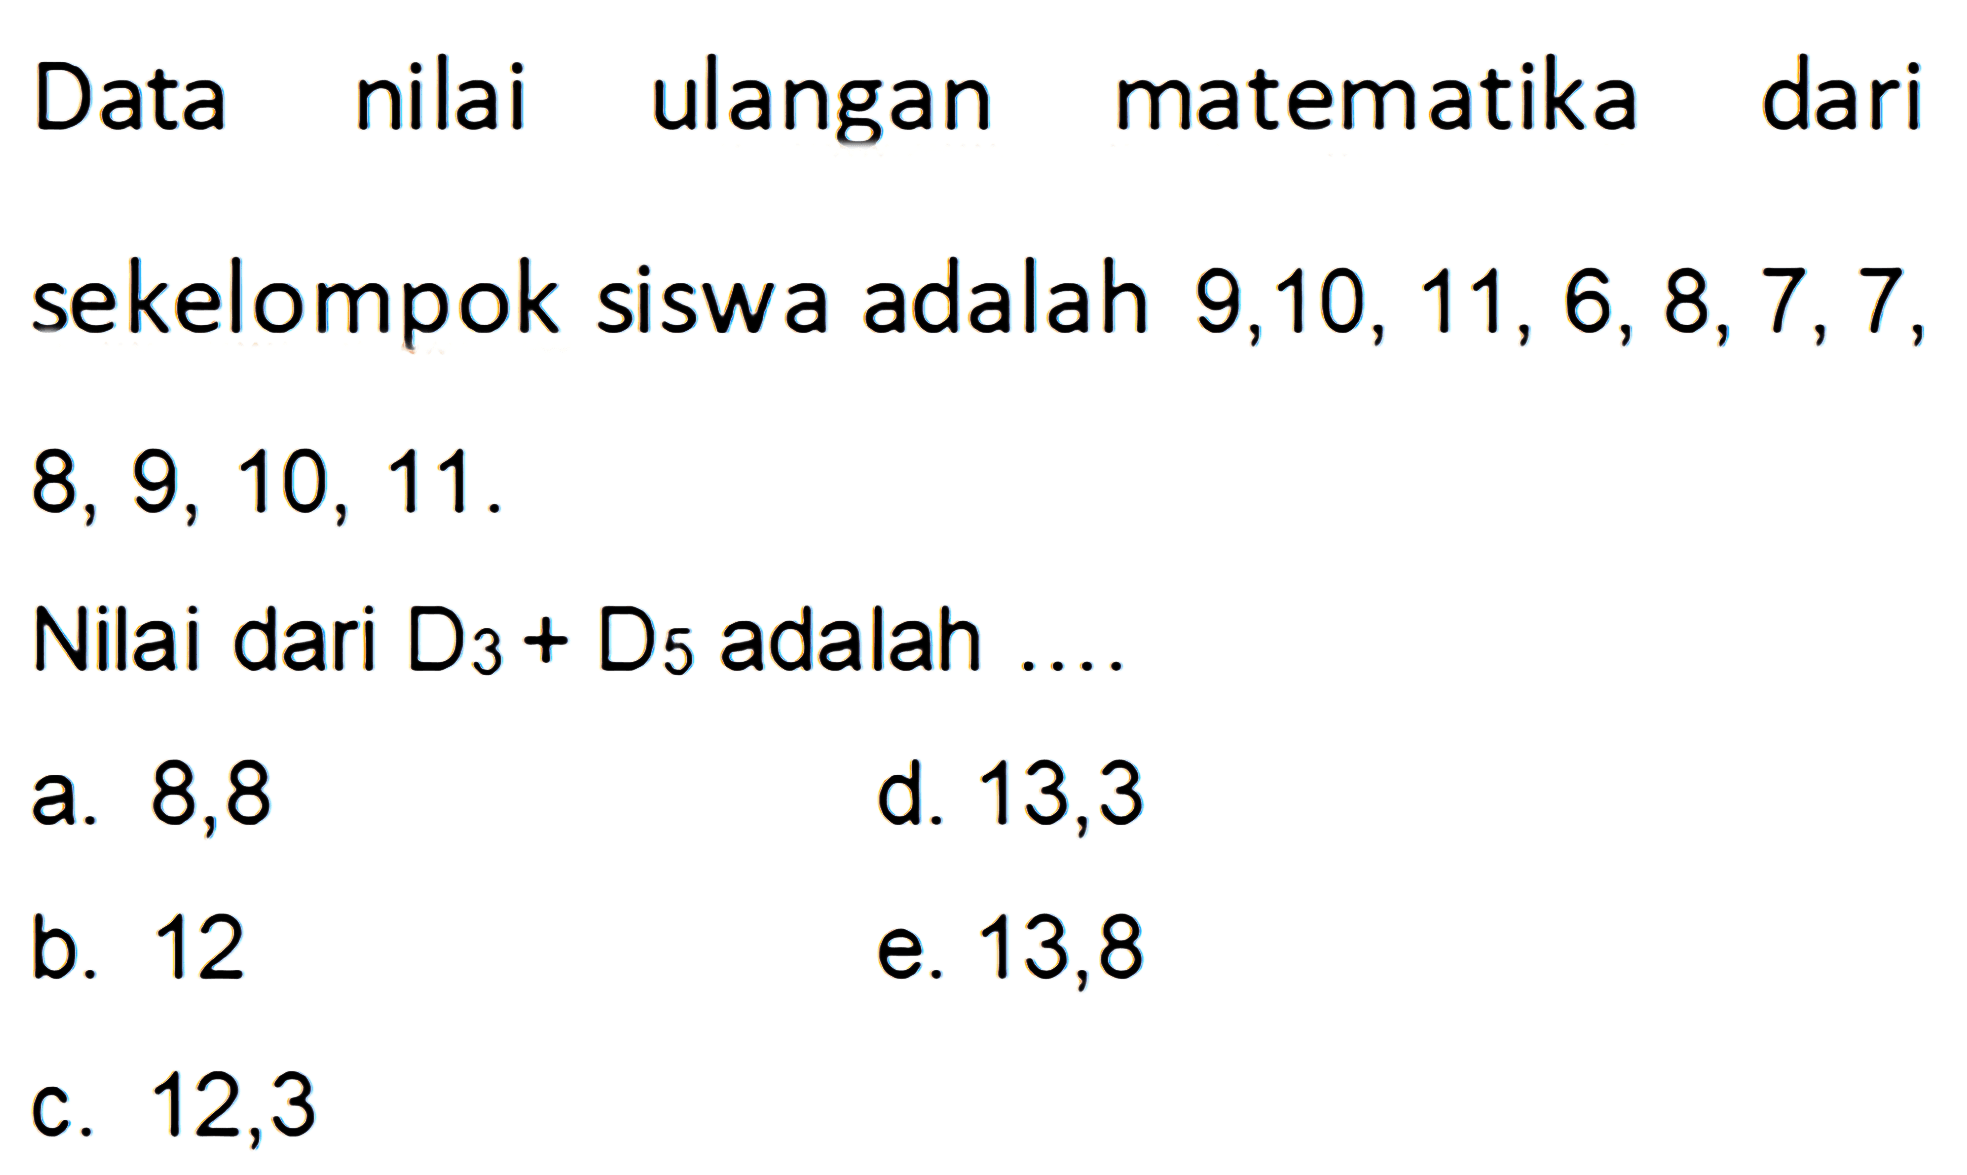 Data nilai ulangan matematika dari sekelompok siswa adalah 9,10,11, 6,8,7,7, 8, 9, 10, 11 . Nilai dari D3+D5 adalah....